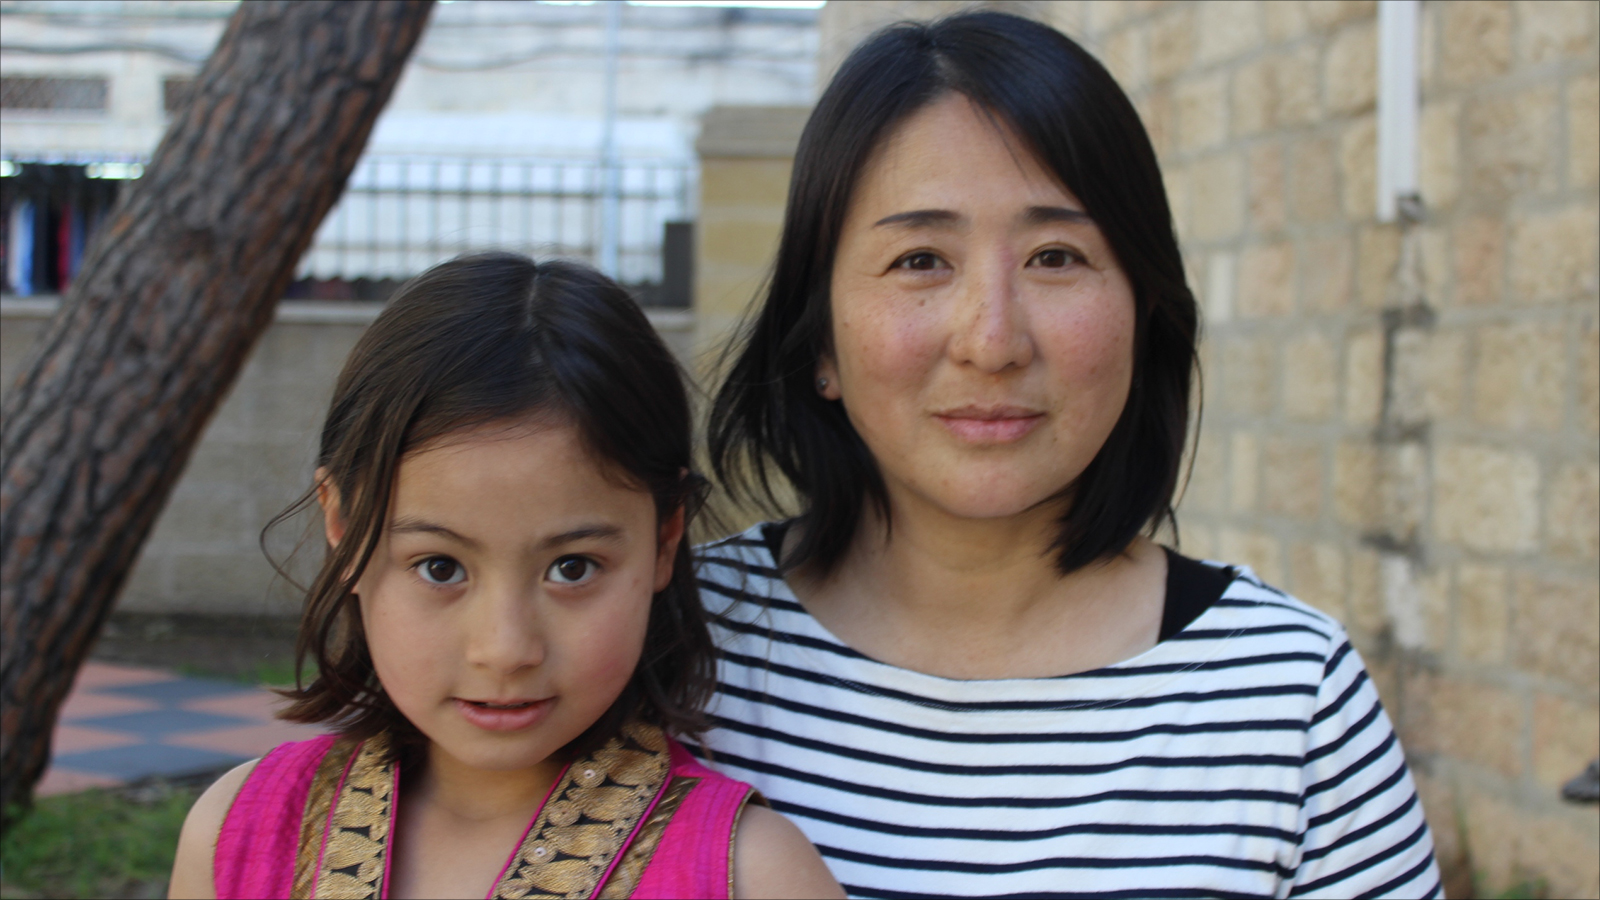 اليابانية المقدسية شيهو توما مع طفلتها منى التي باتت تتحدث خمس لغات 